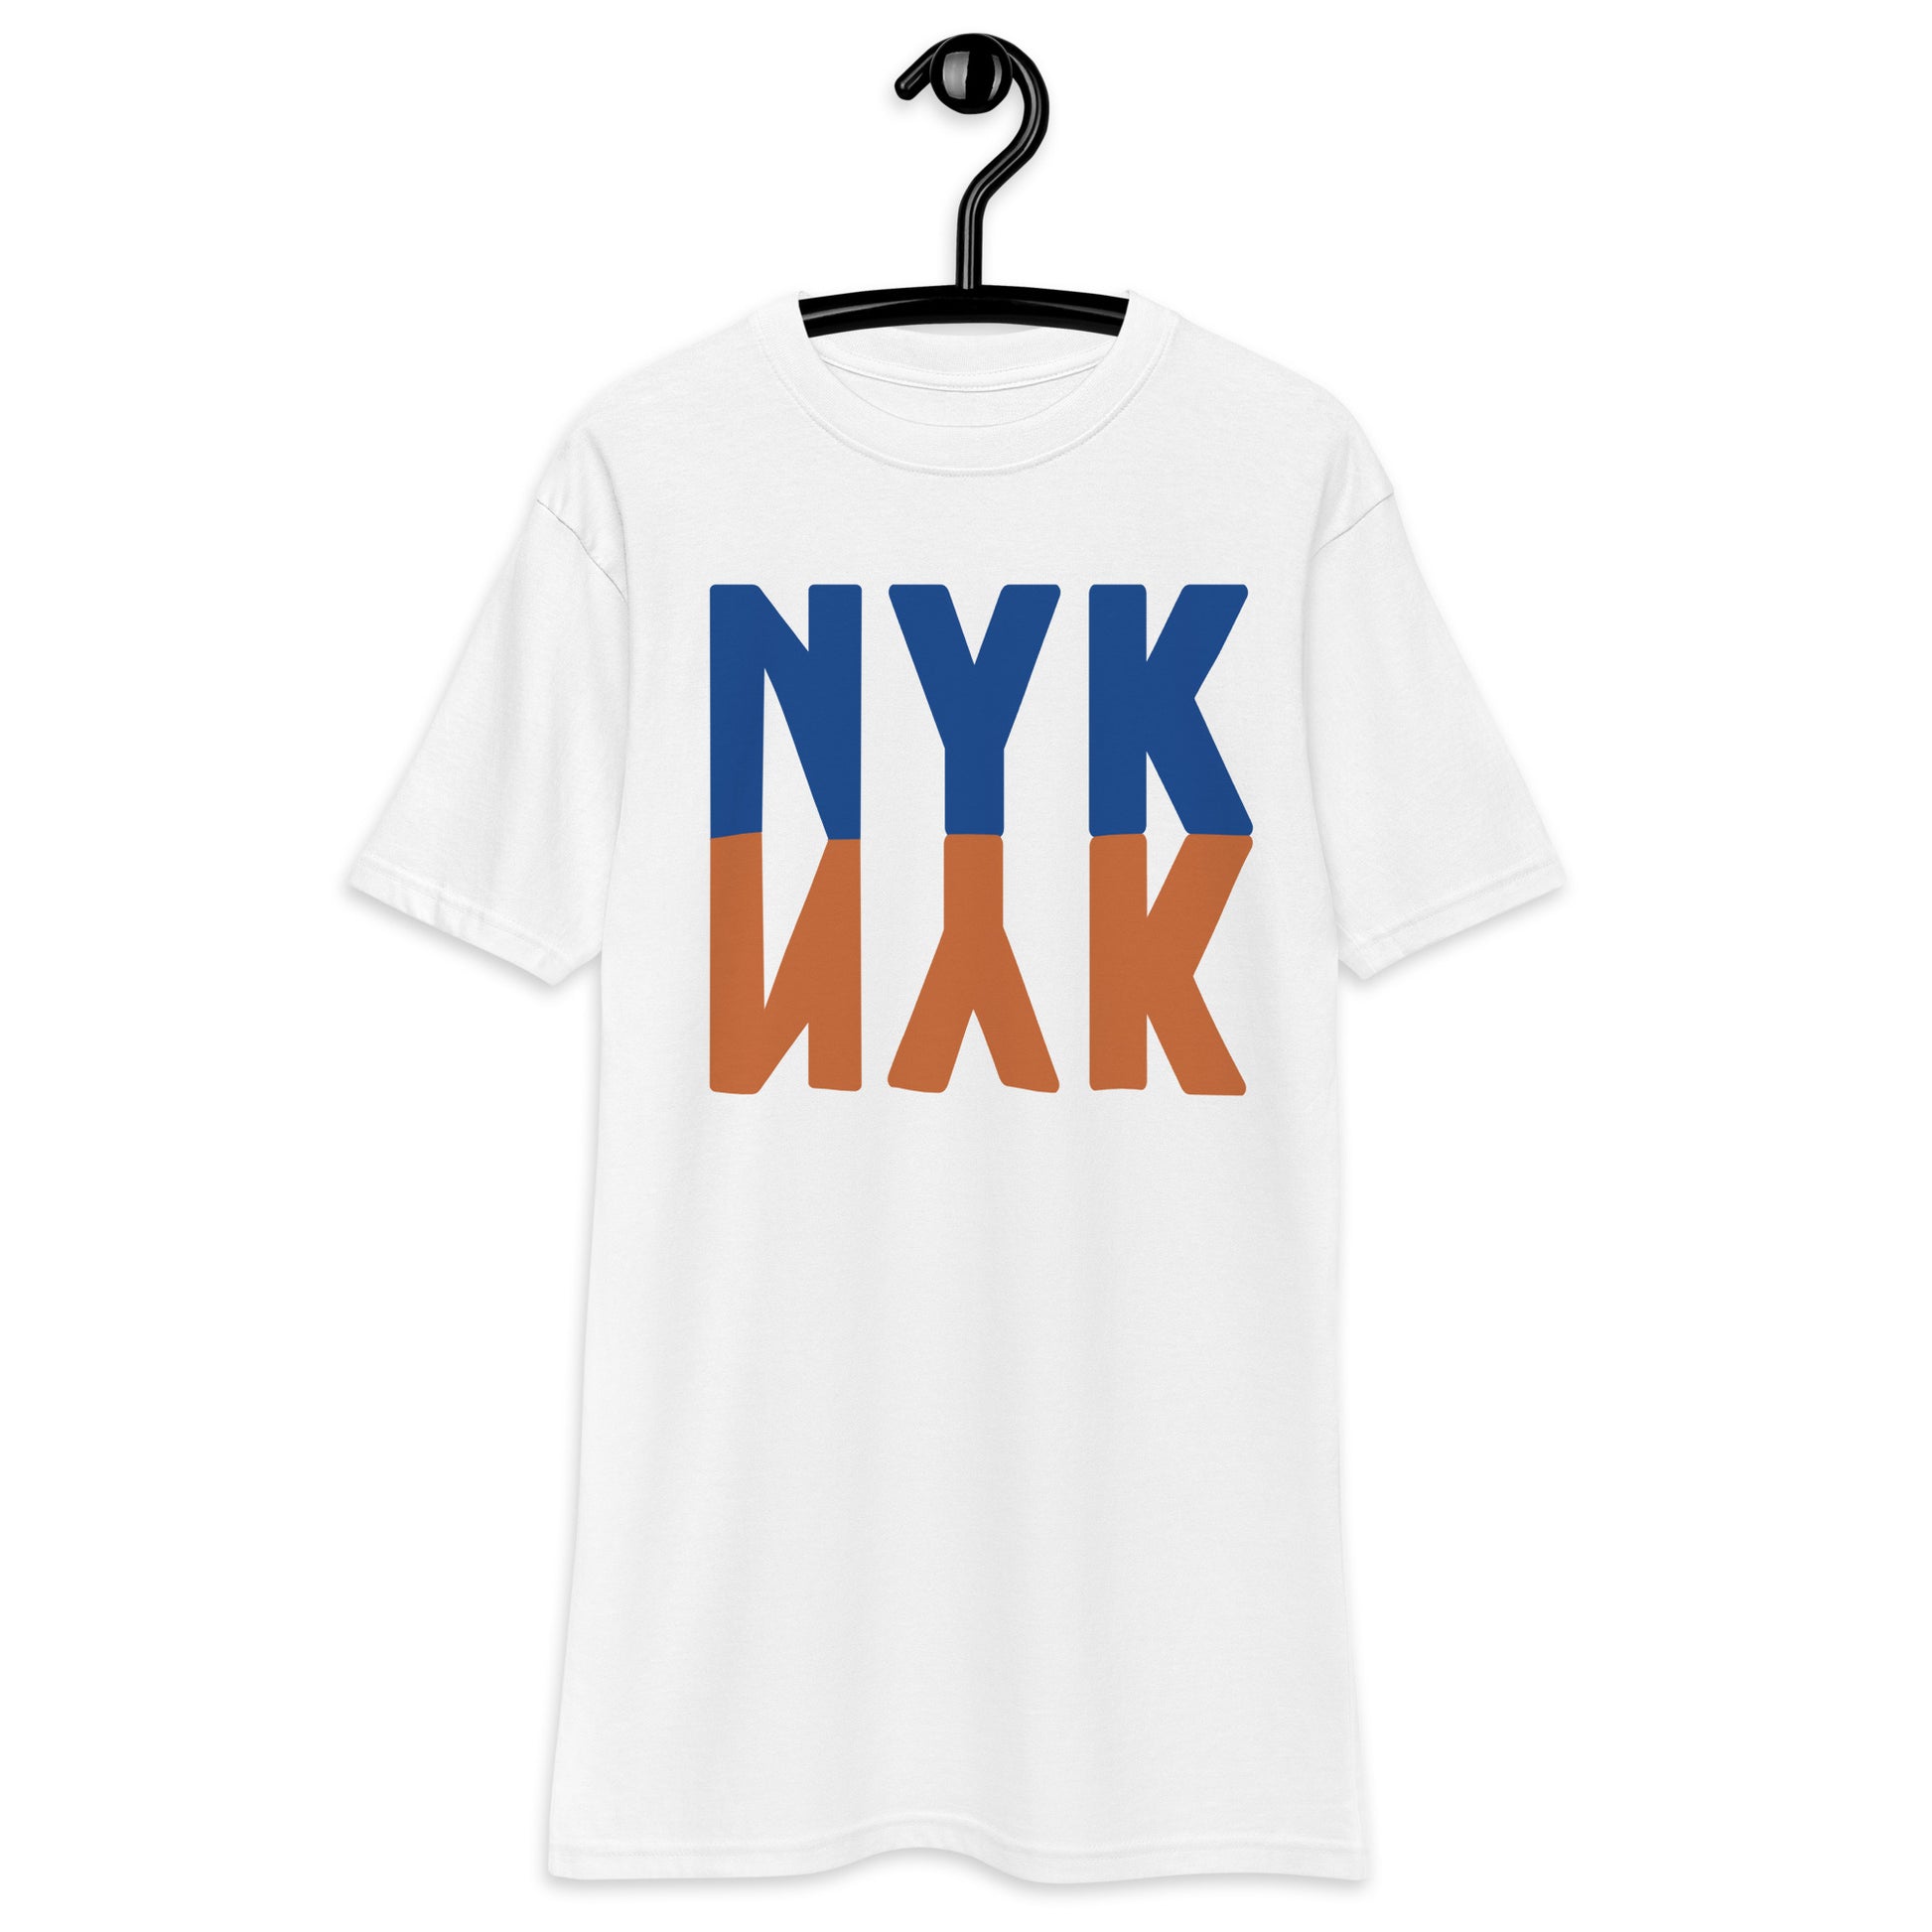 newyork - men tshirts - shirts - tshirts - graphic tees - turtlepanda